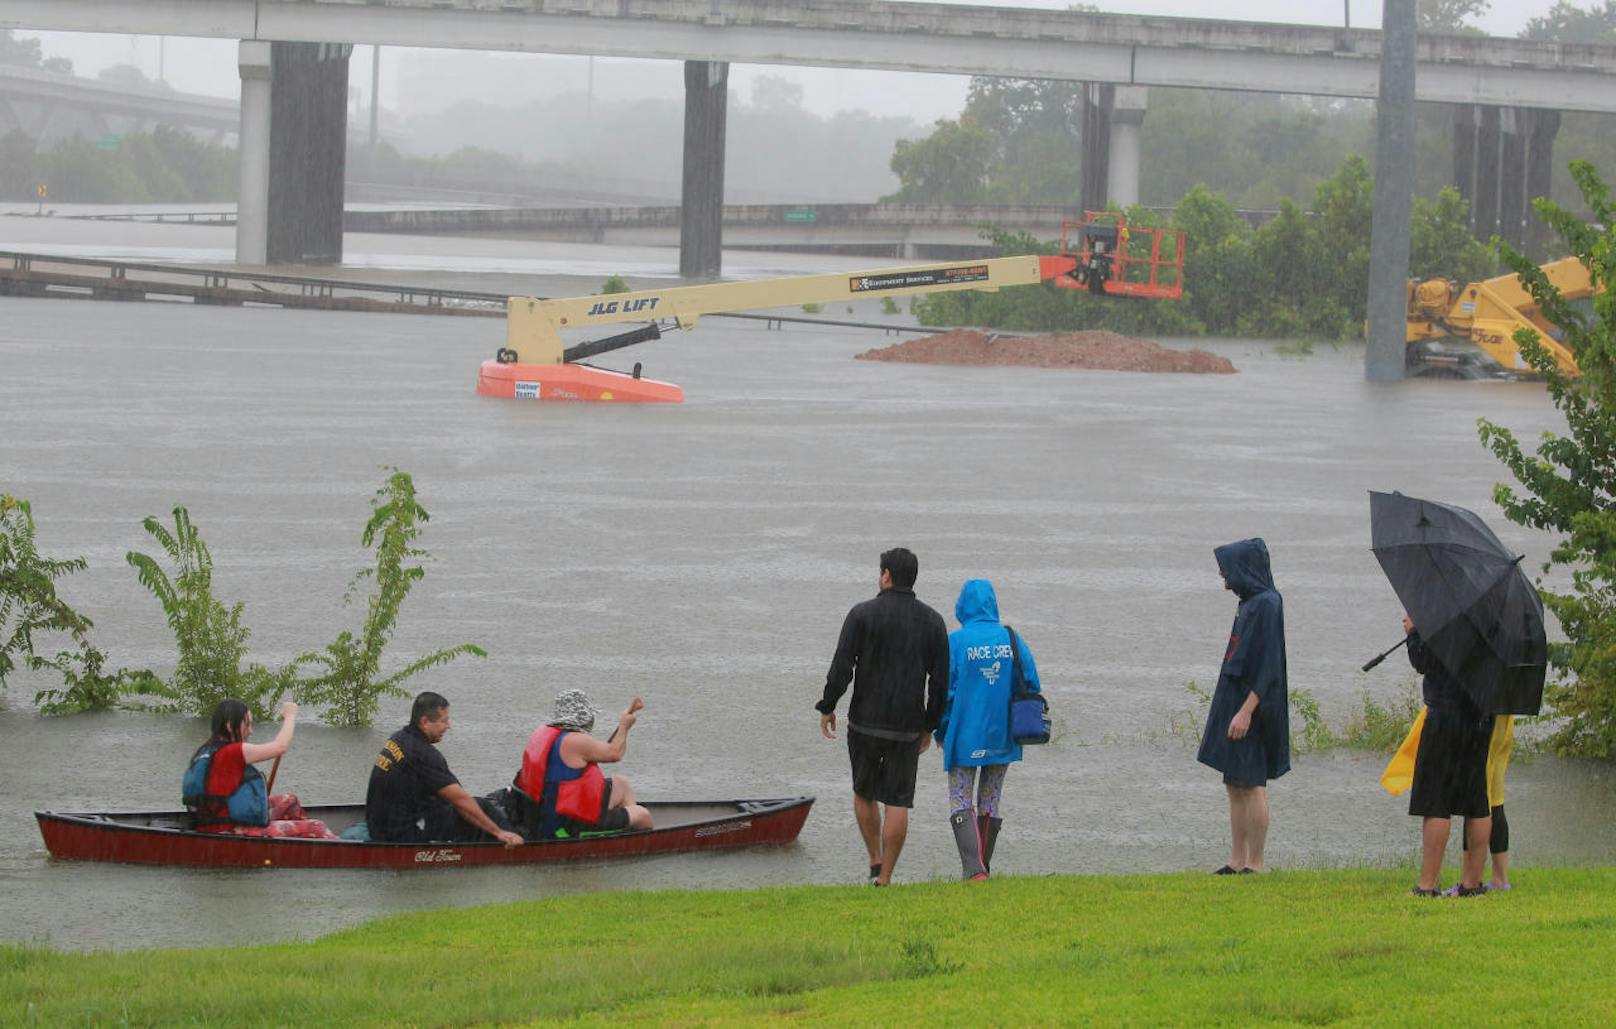 Hurrikan "Harvey" richtete in Houston (Texas) verheerende Schäden an.